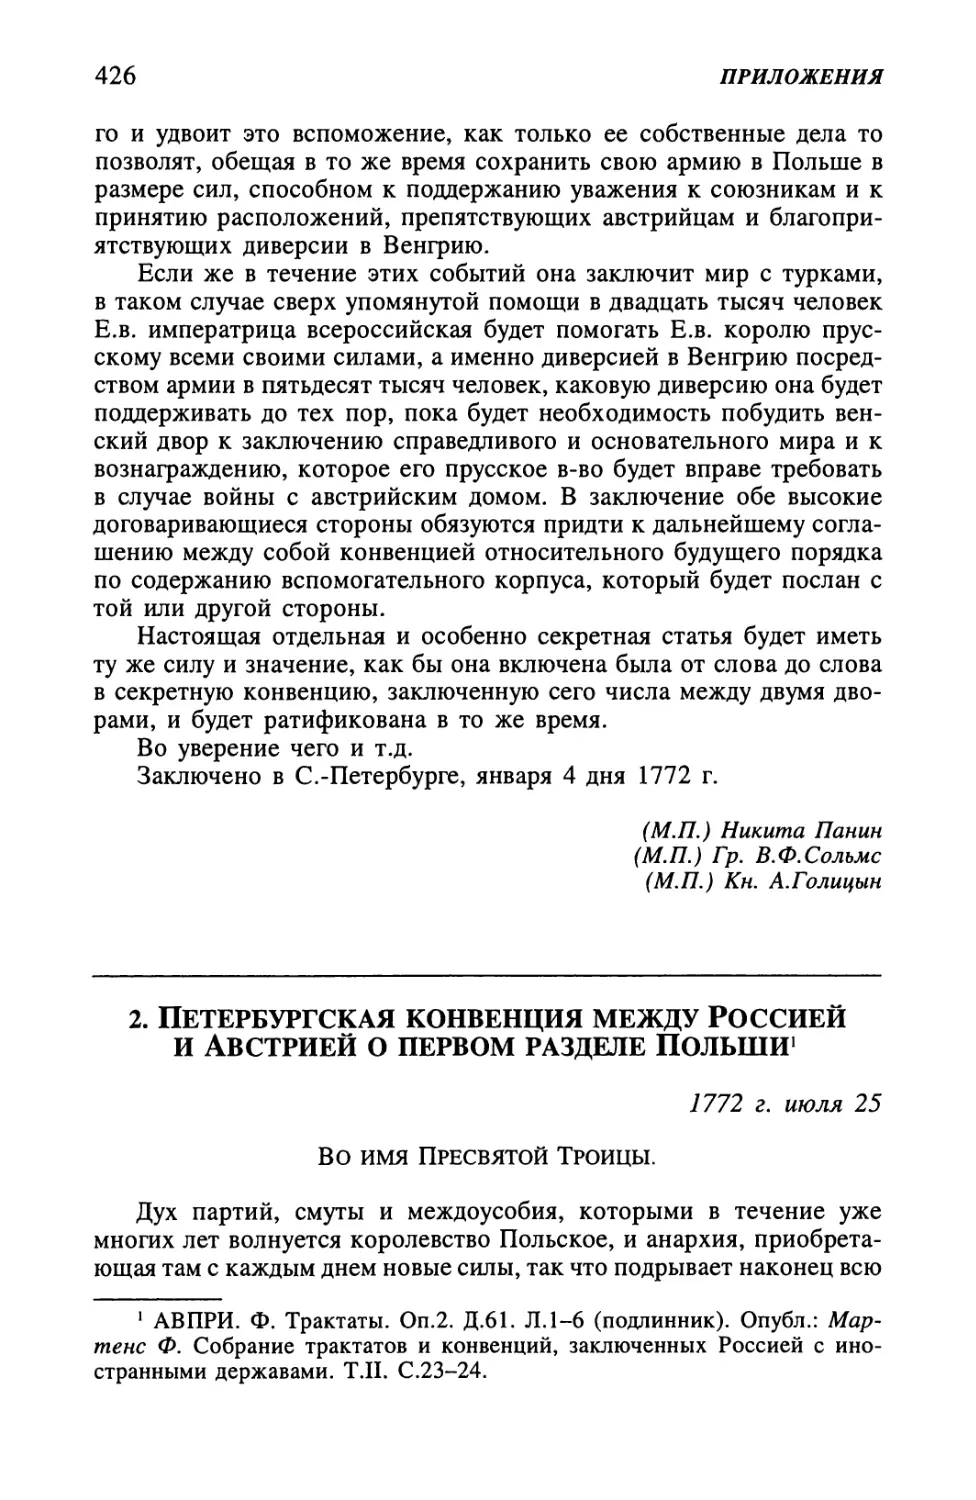 2. Петербургская конвенция между Россией и Австрией о первом разделе Польши от 25 июля 1772 г